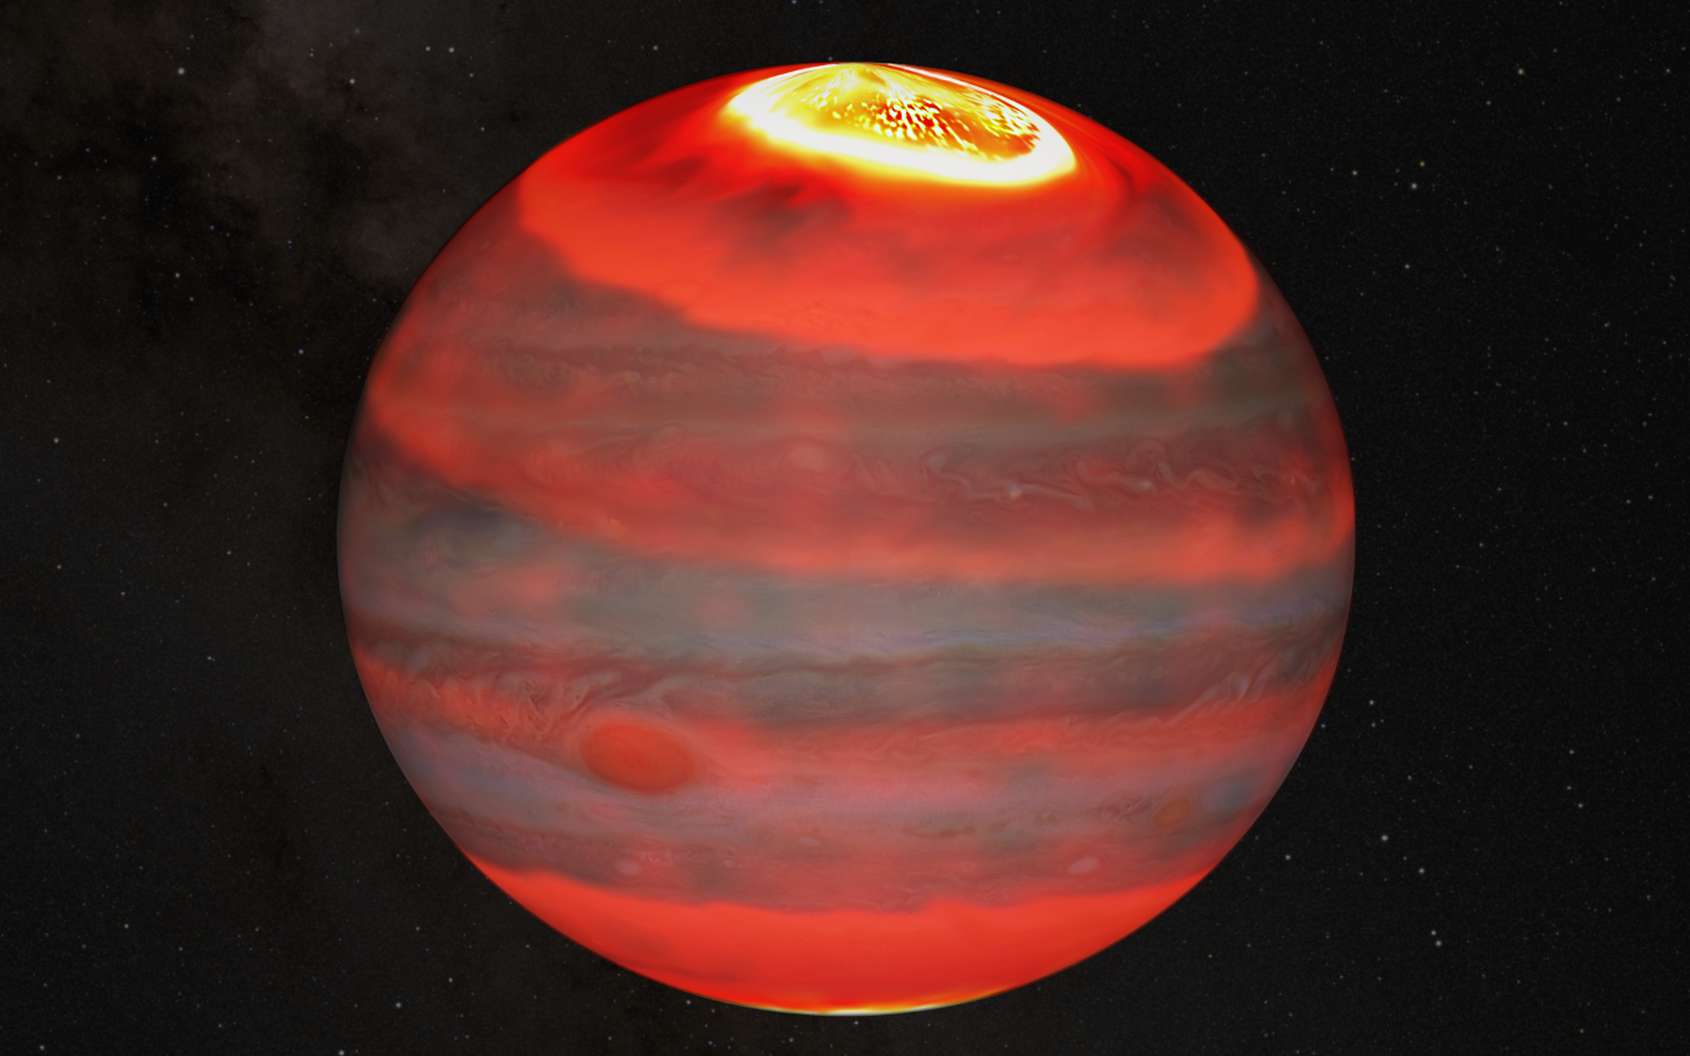 Une vue d'artiste des ondes de chaleurs issues des pôles de Jupiter en direction de son équateur. © J. O'Donoghue (Jaxa)/Hubble/Nasa/ESA/A. Simon/J. Schmidt